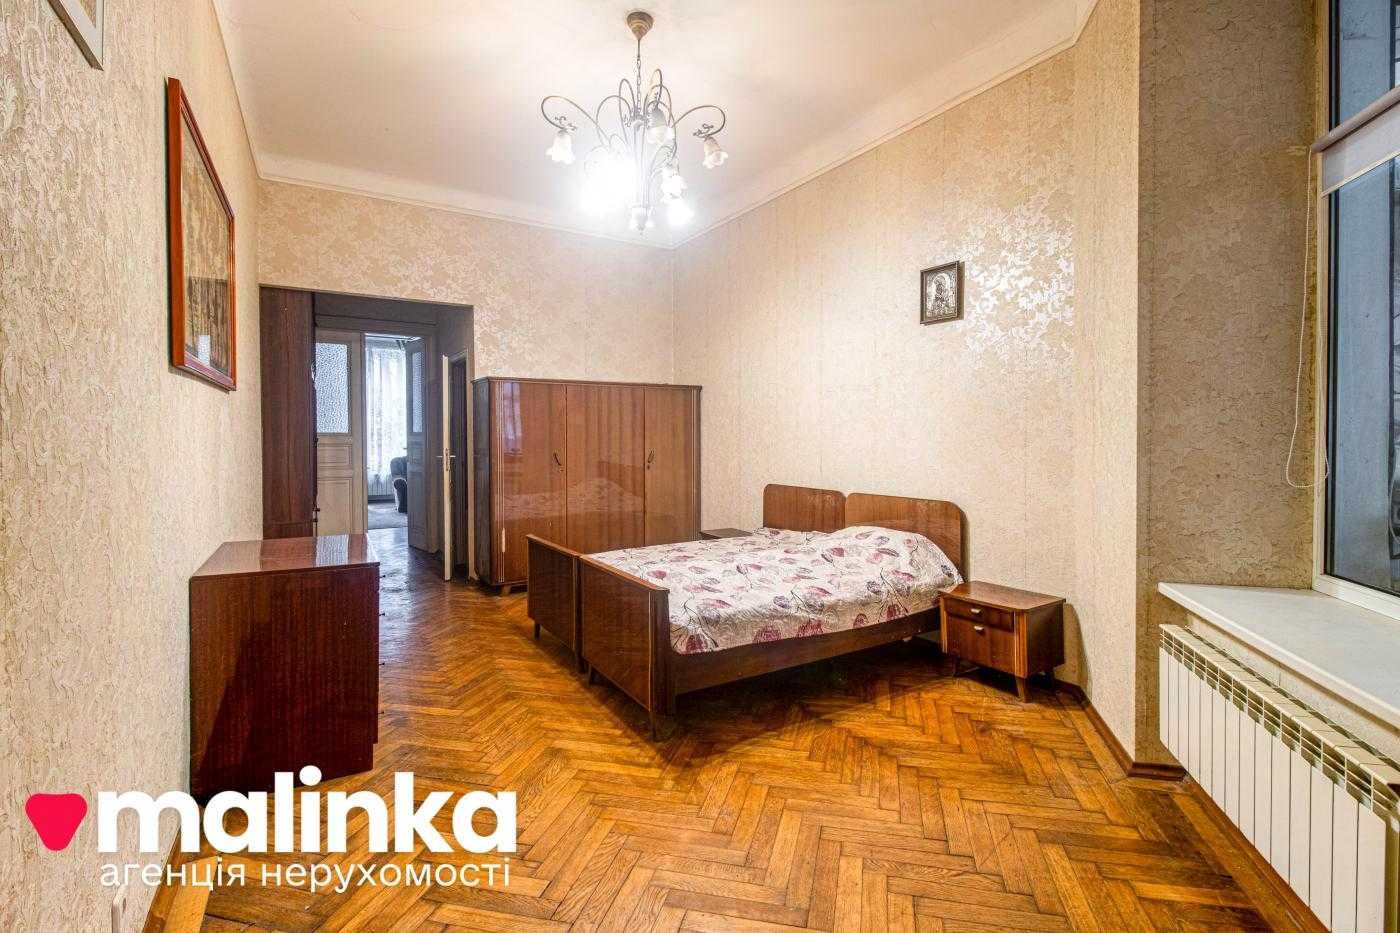 2-кмн квартири у австрійському будинку на вулиці Коновальця